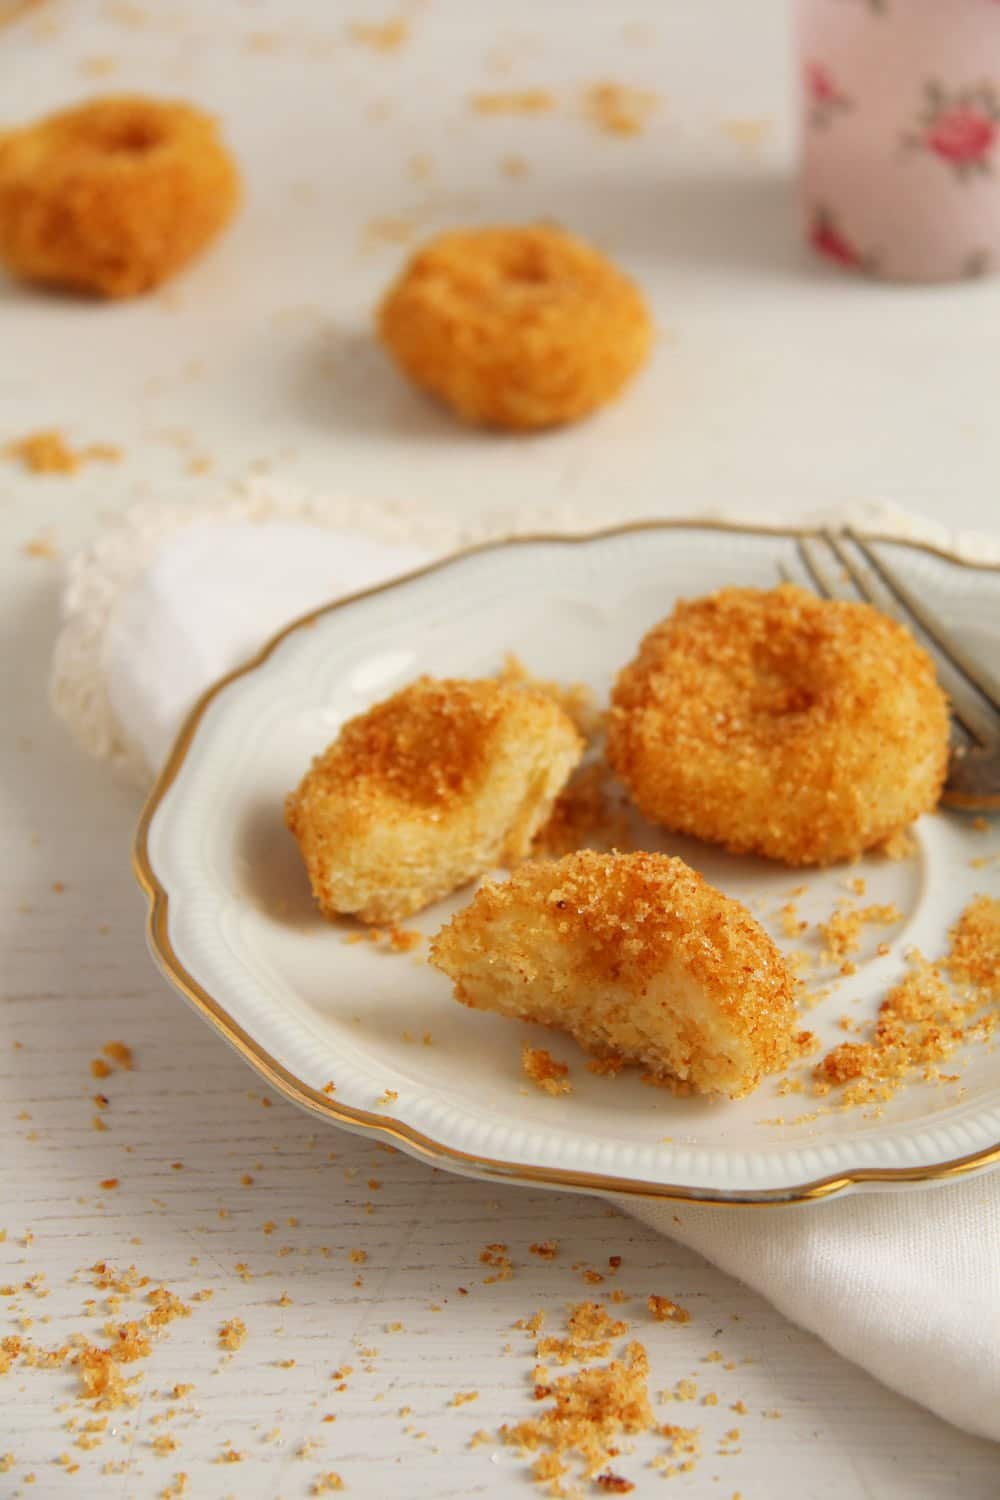 Romanian Cheese Dumplings – Papanasi fierti